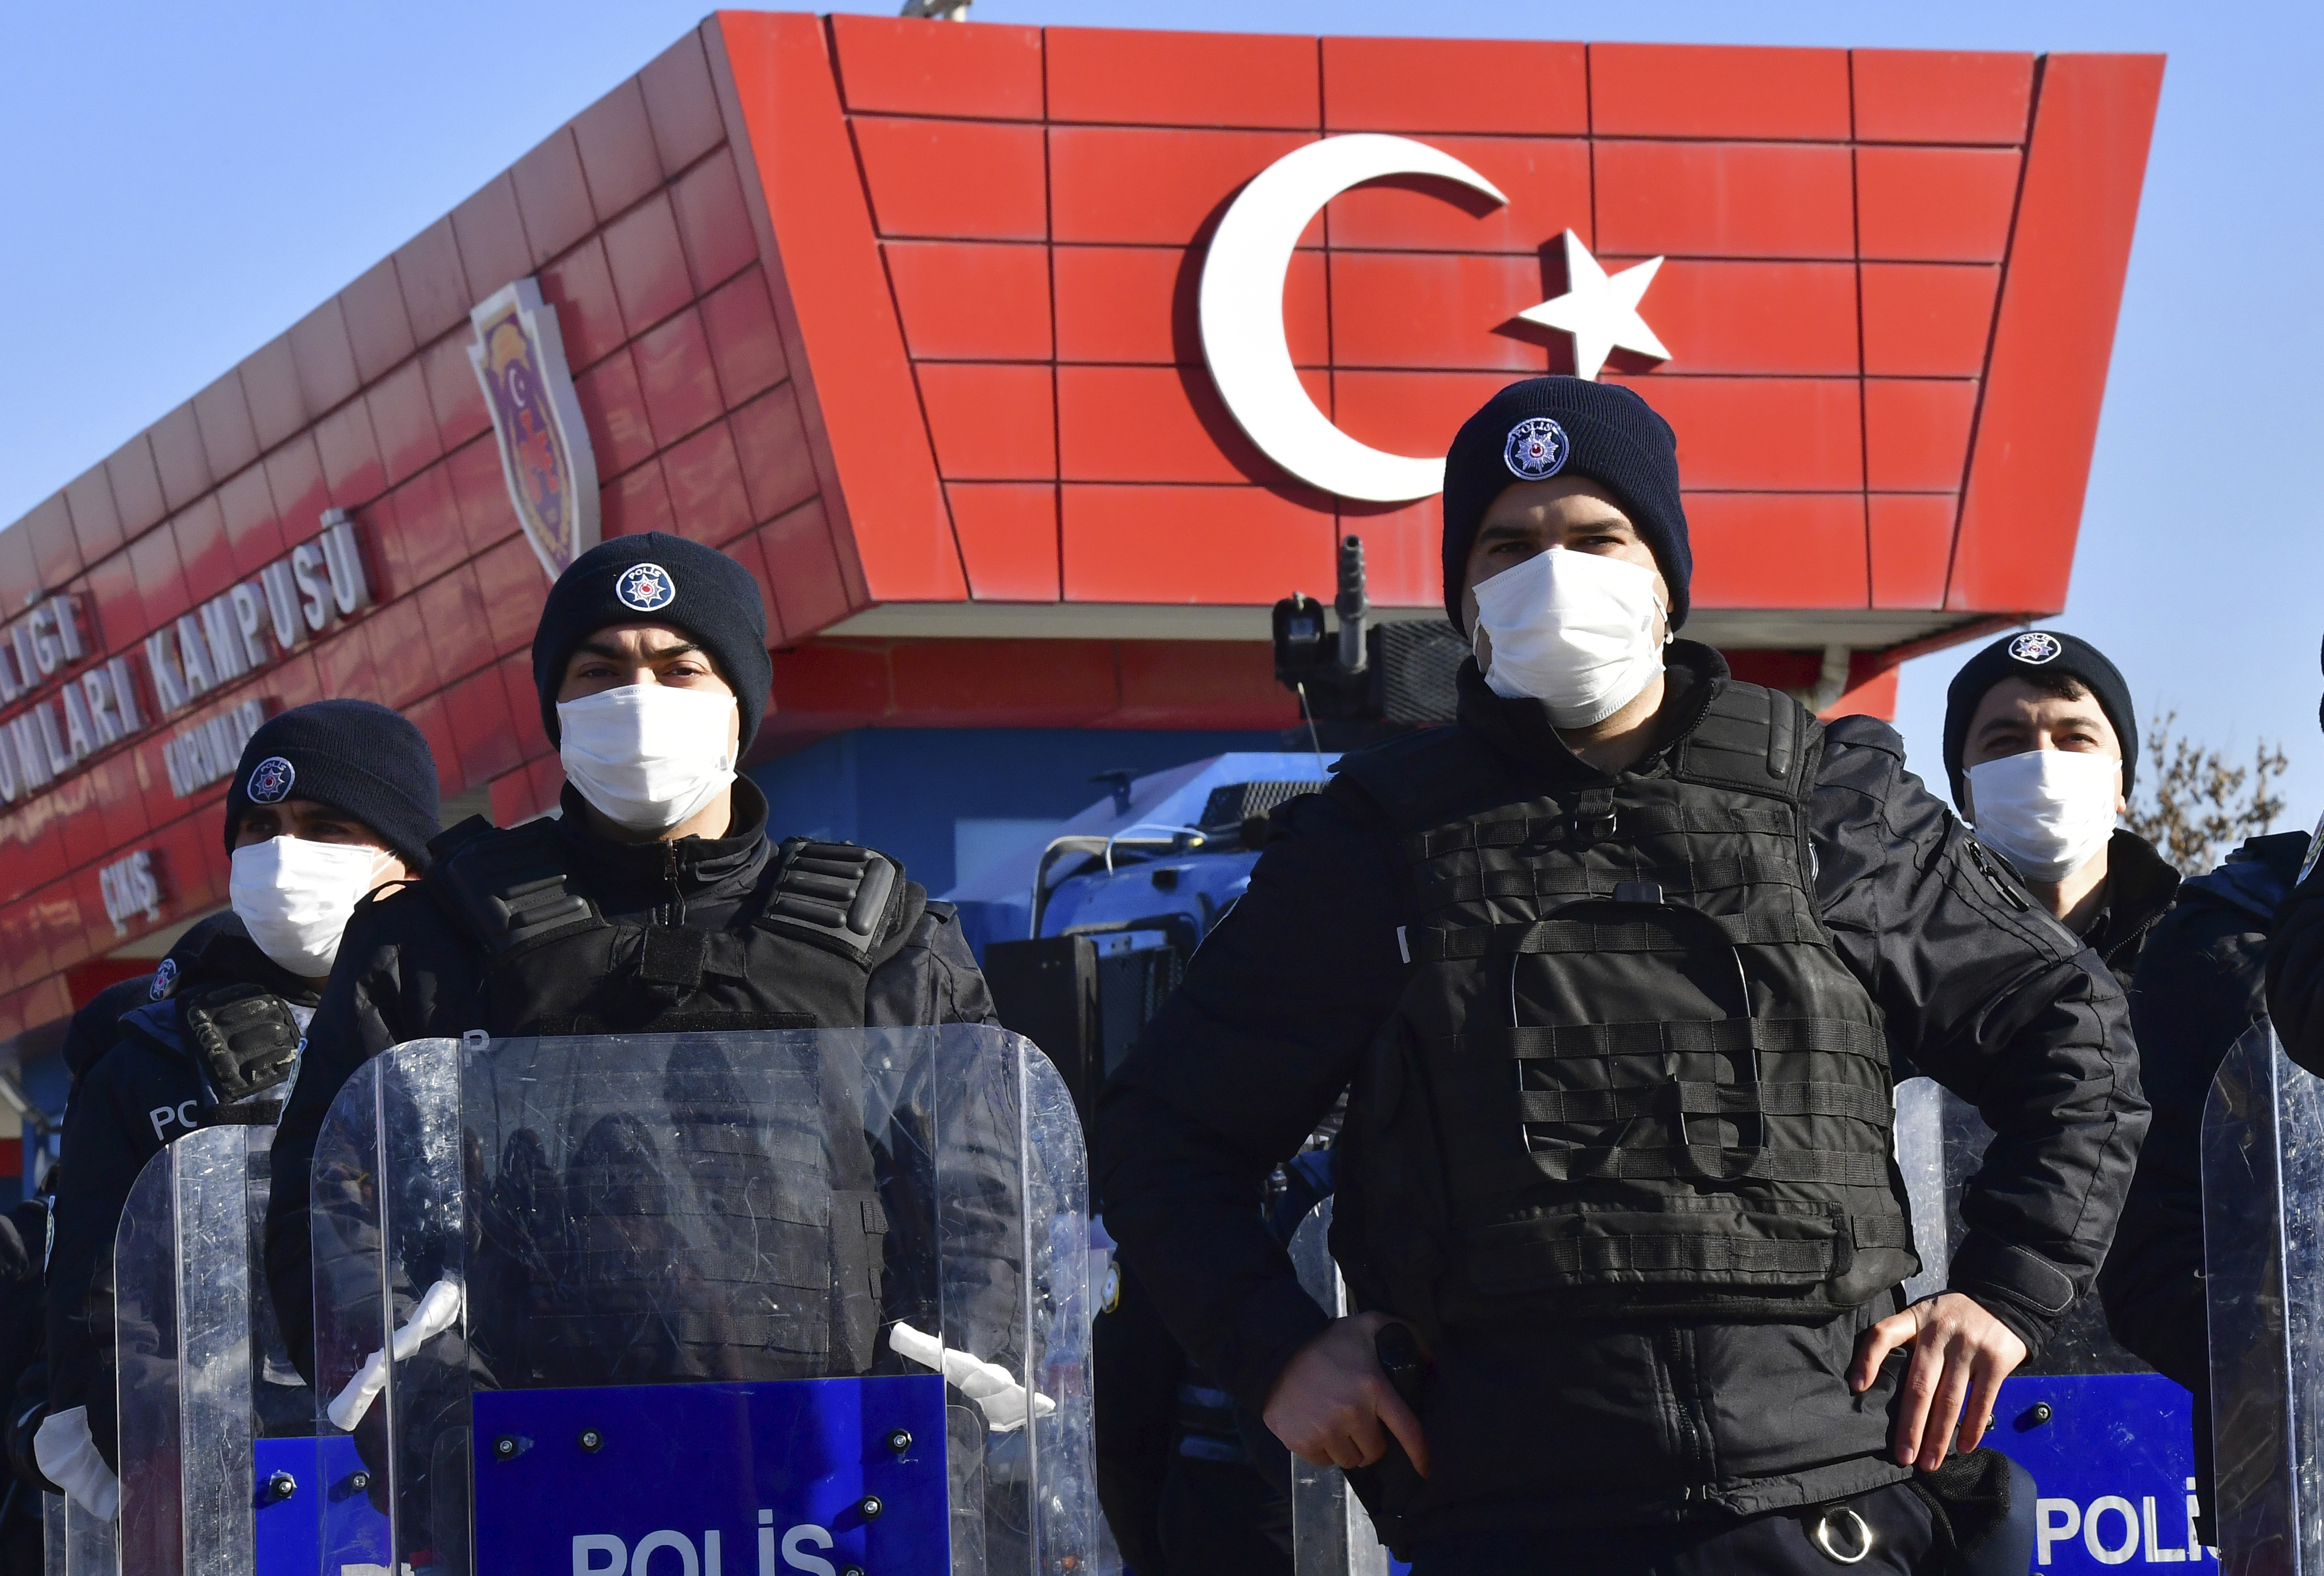 Polizeieinsatzkäfte sichern ein Justizgebäude in Ankara, in dem rund 500 Angeklagten der Prozess gemacht wird (Archivbild vom 26.11.2020). | picture alliance / ASSOCIATED PRESS